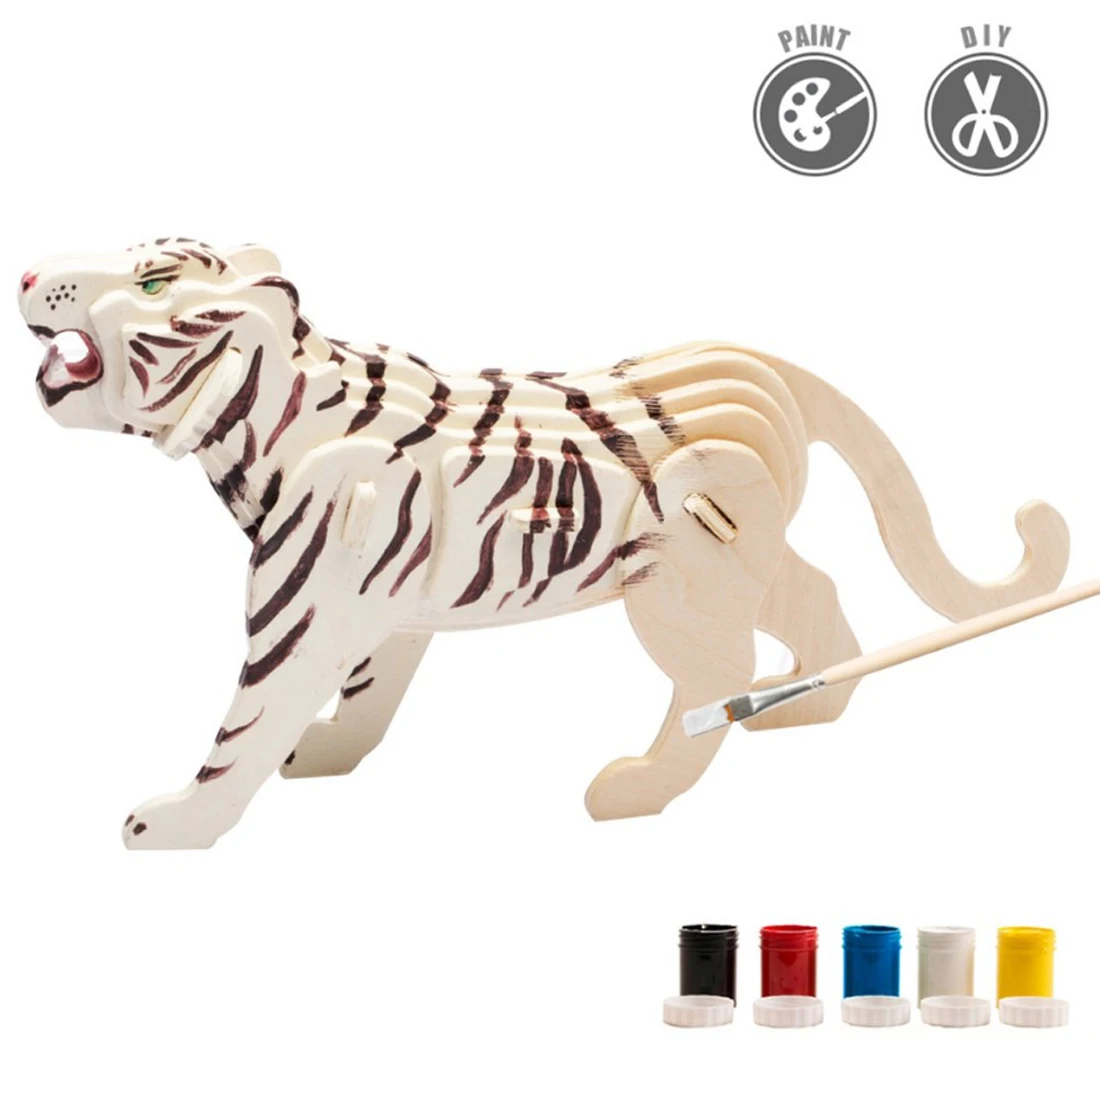 В форме тигра 3D живопись головоломка DIY собрать стволовых игрушки с 5 цвета пигмента раннего обучения Образование игрушки для детей